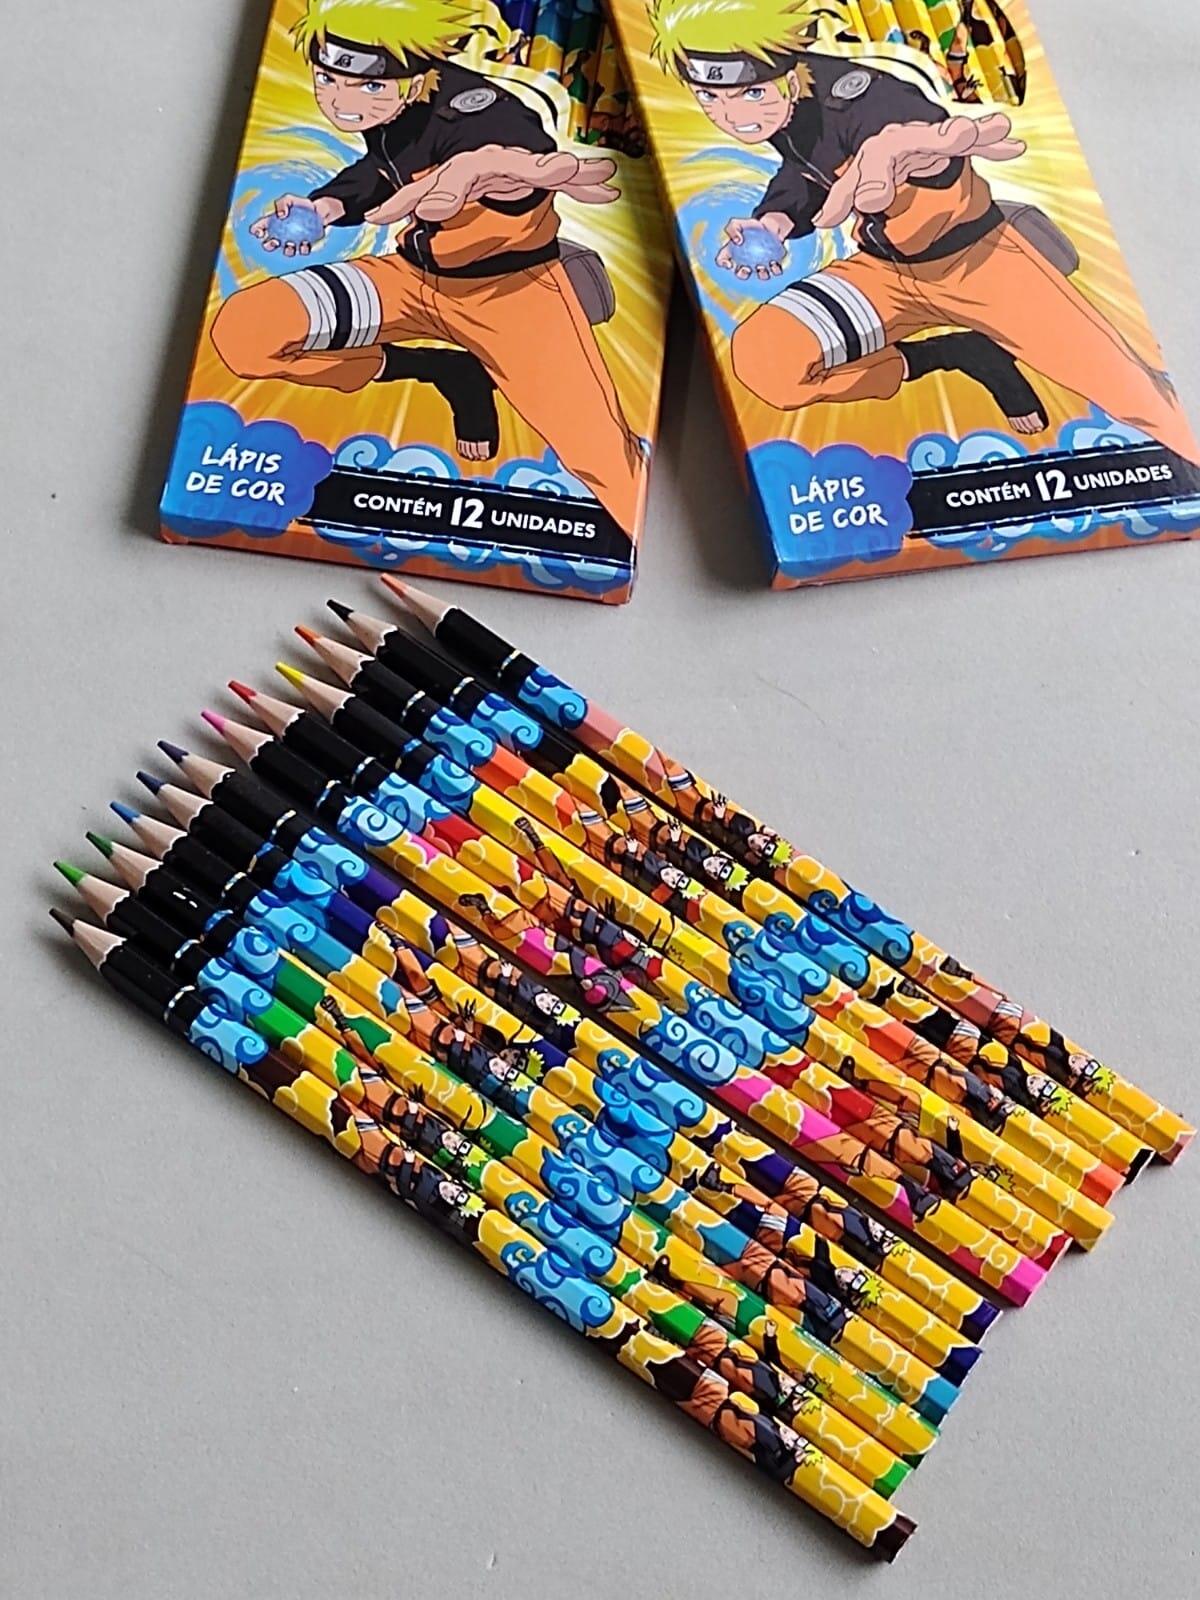 Lápis De Cor Multicolor Caixa Com 12 Cores